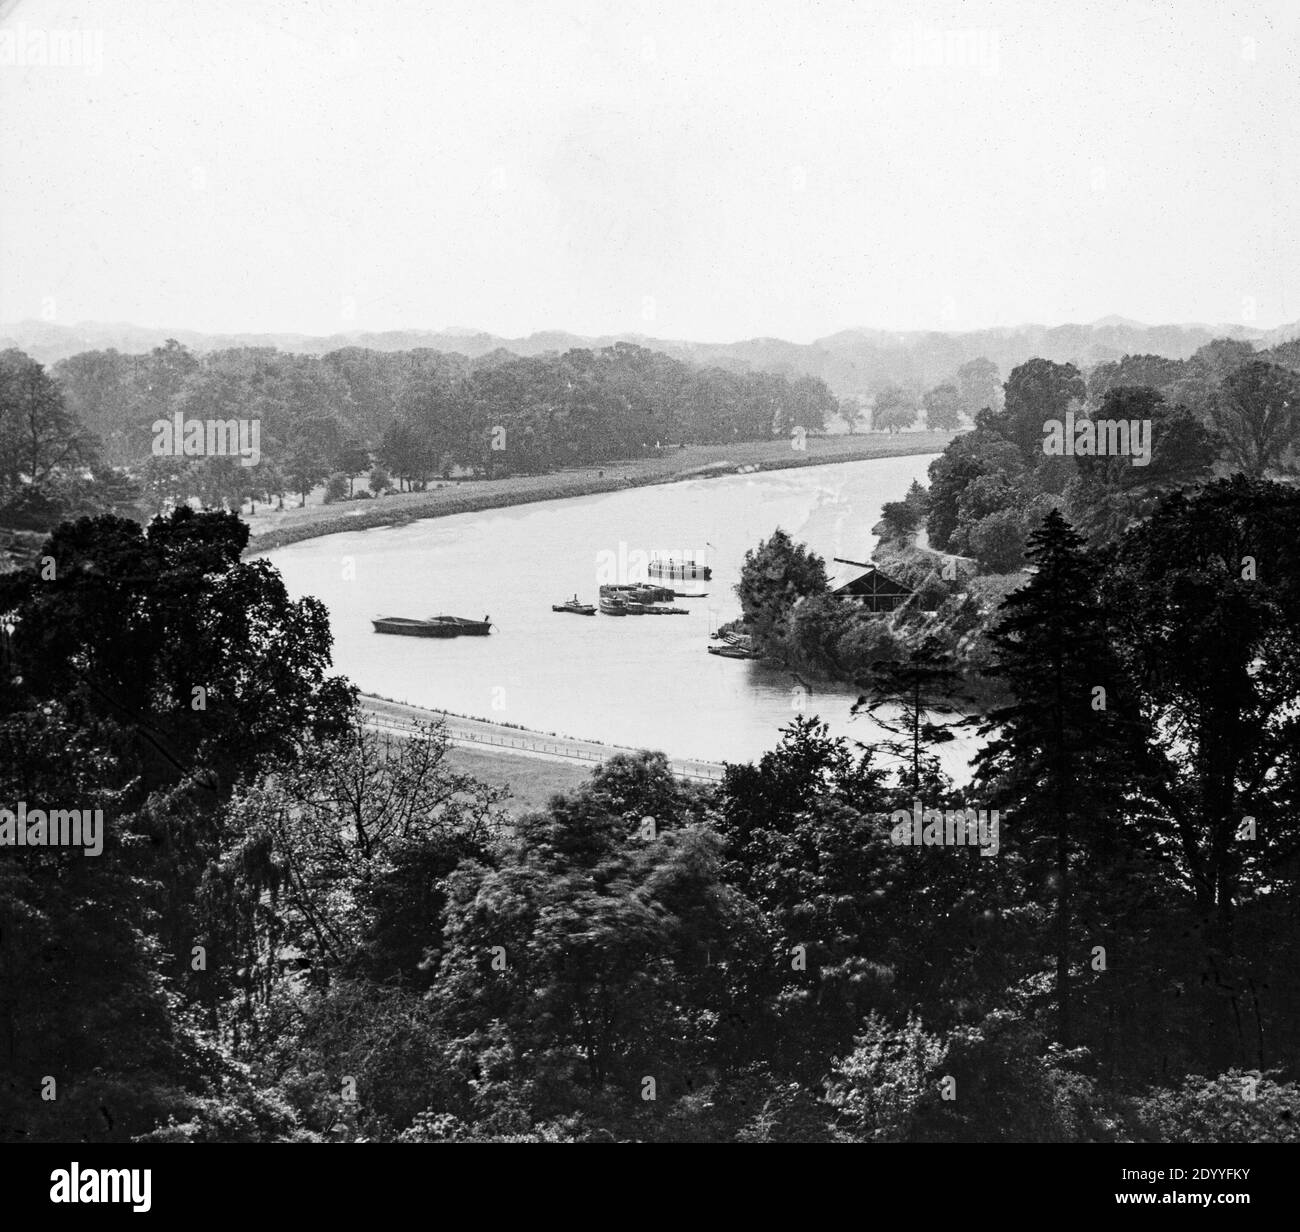 Photographie noir et blanc de la fin de l'époque victorienne montrant la vue sur la Tamise depuis Richmond Hill, Londres, Angleterre. Banque D'Images